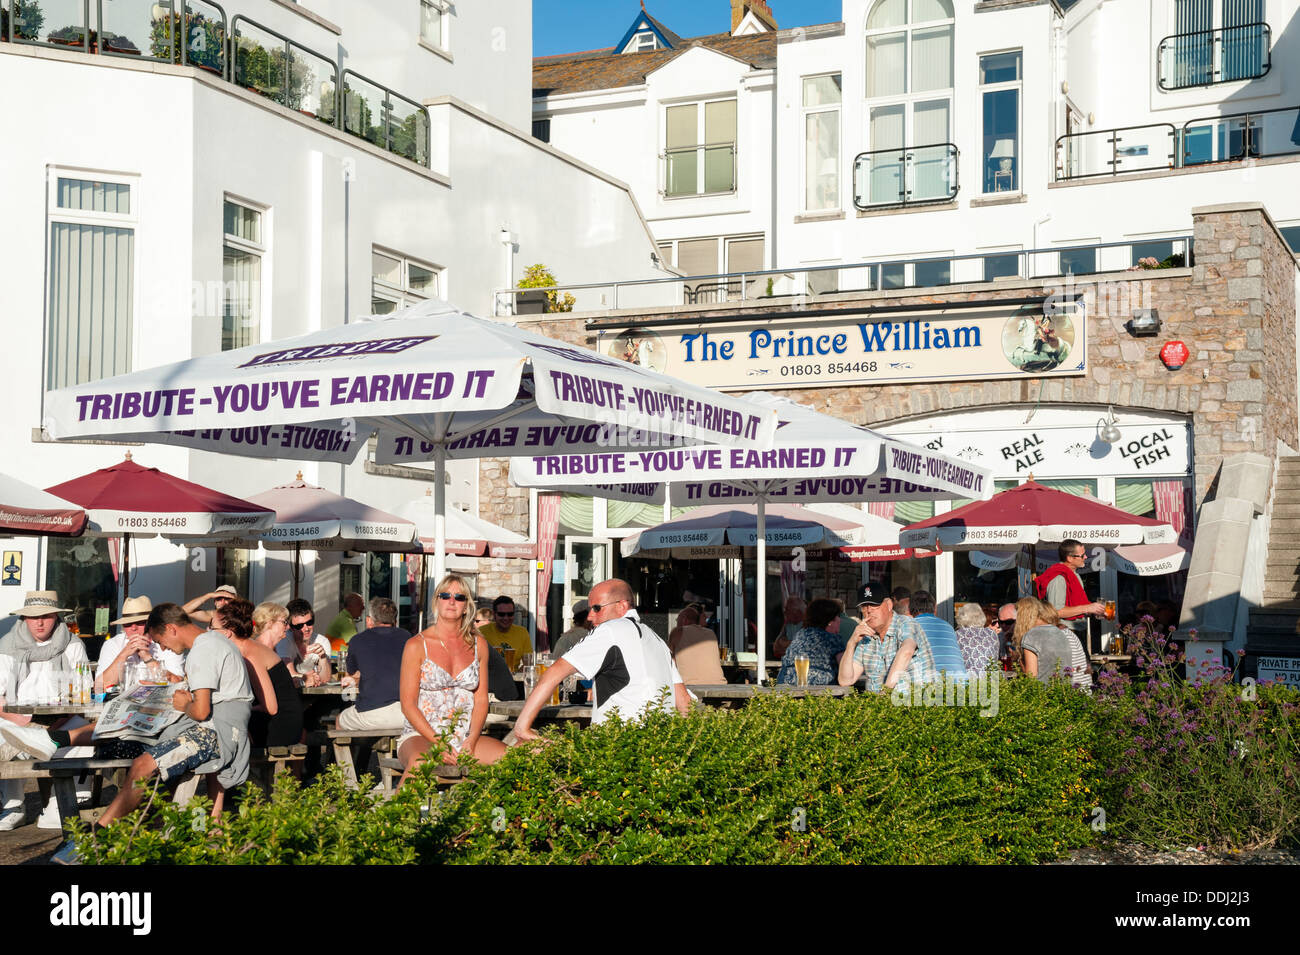 Le prince William pub dans le port de Brixham, Devon, UK. Banque D'Images